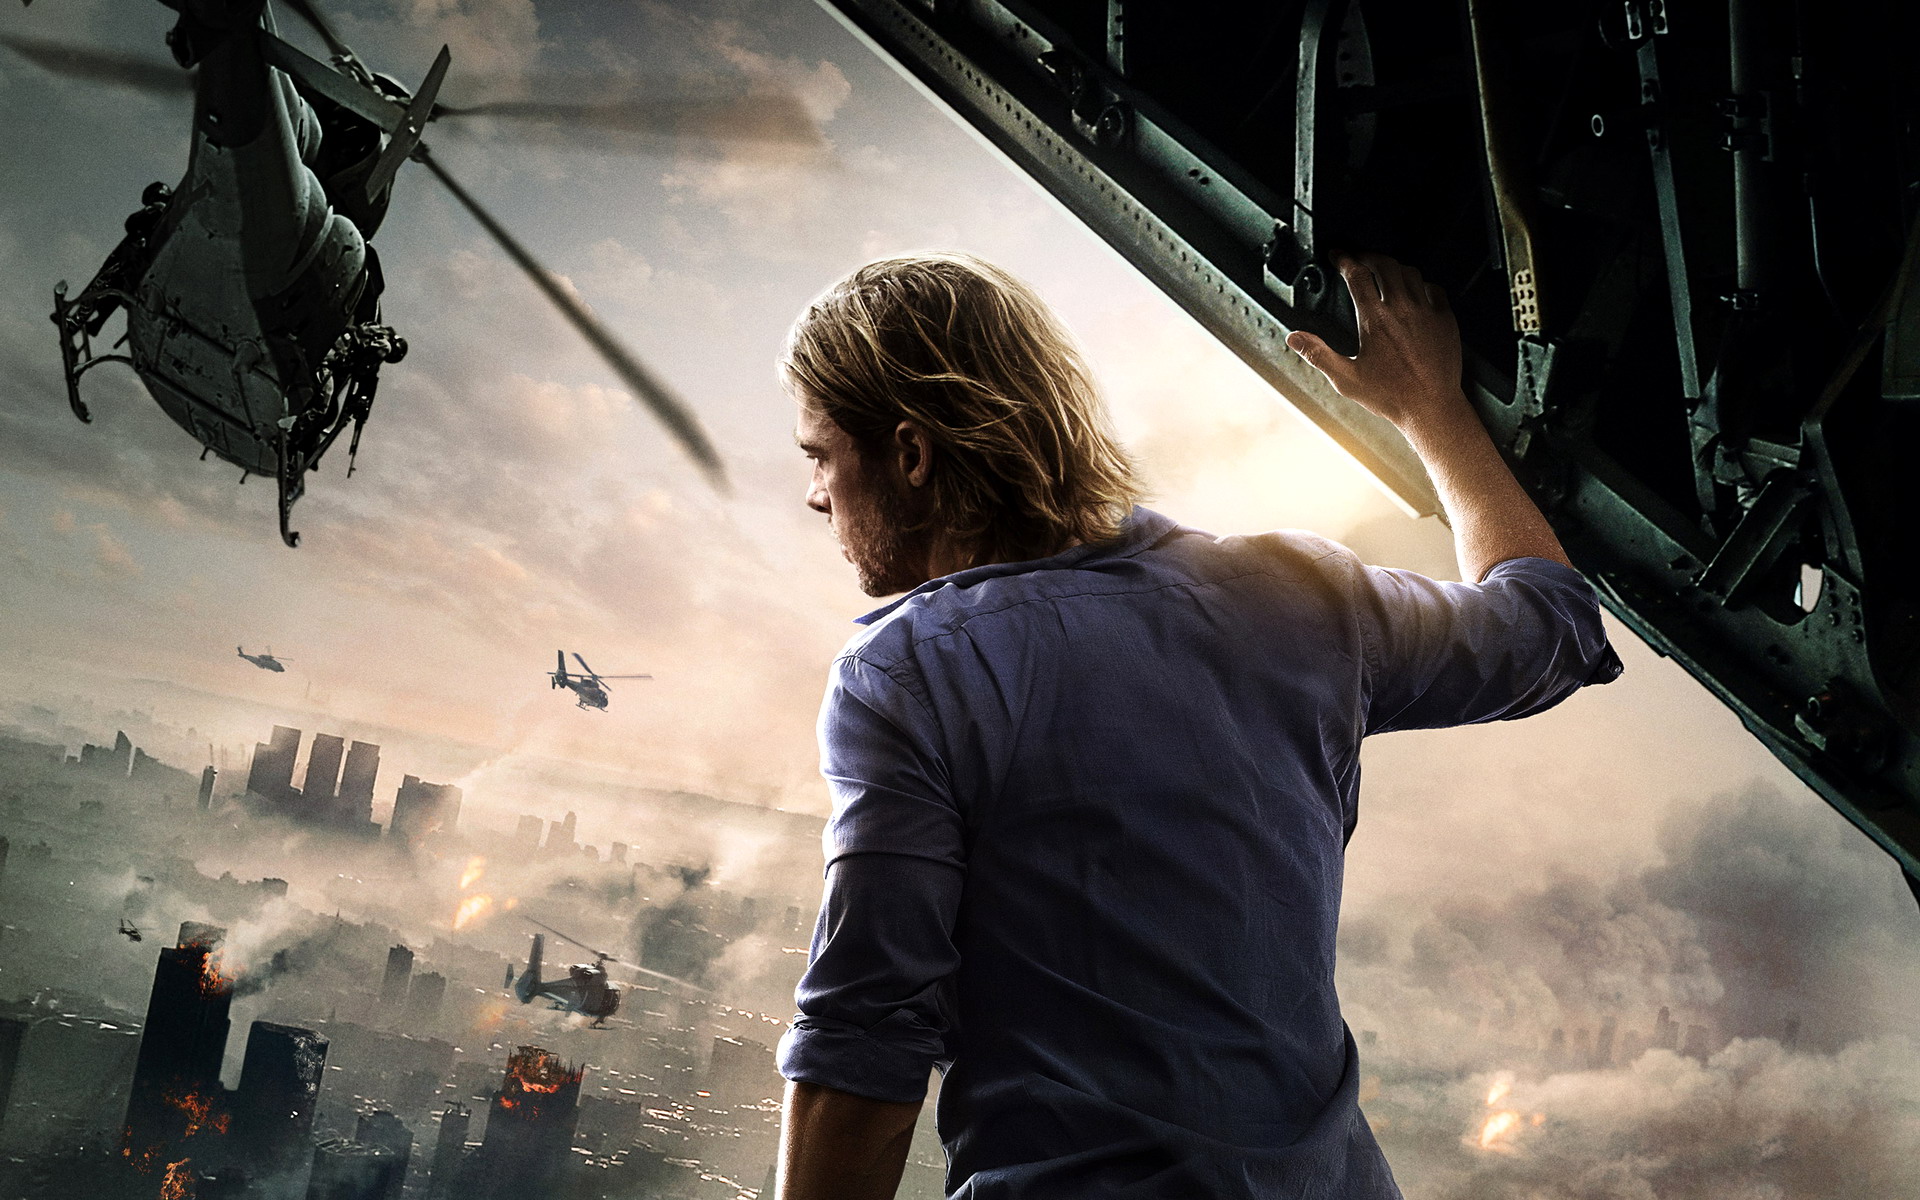 World War Z 2 Trailer (2020) - Brad Pitt Movie